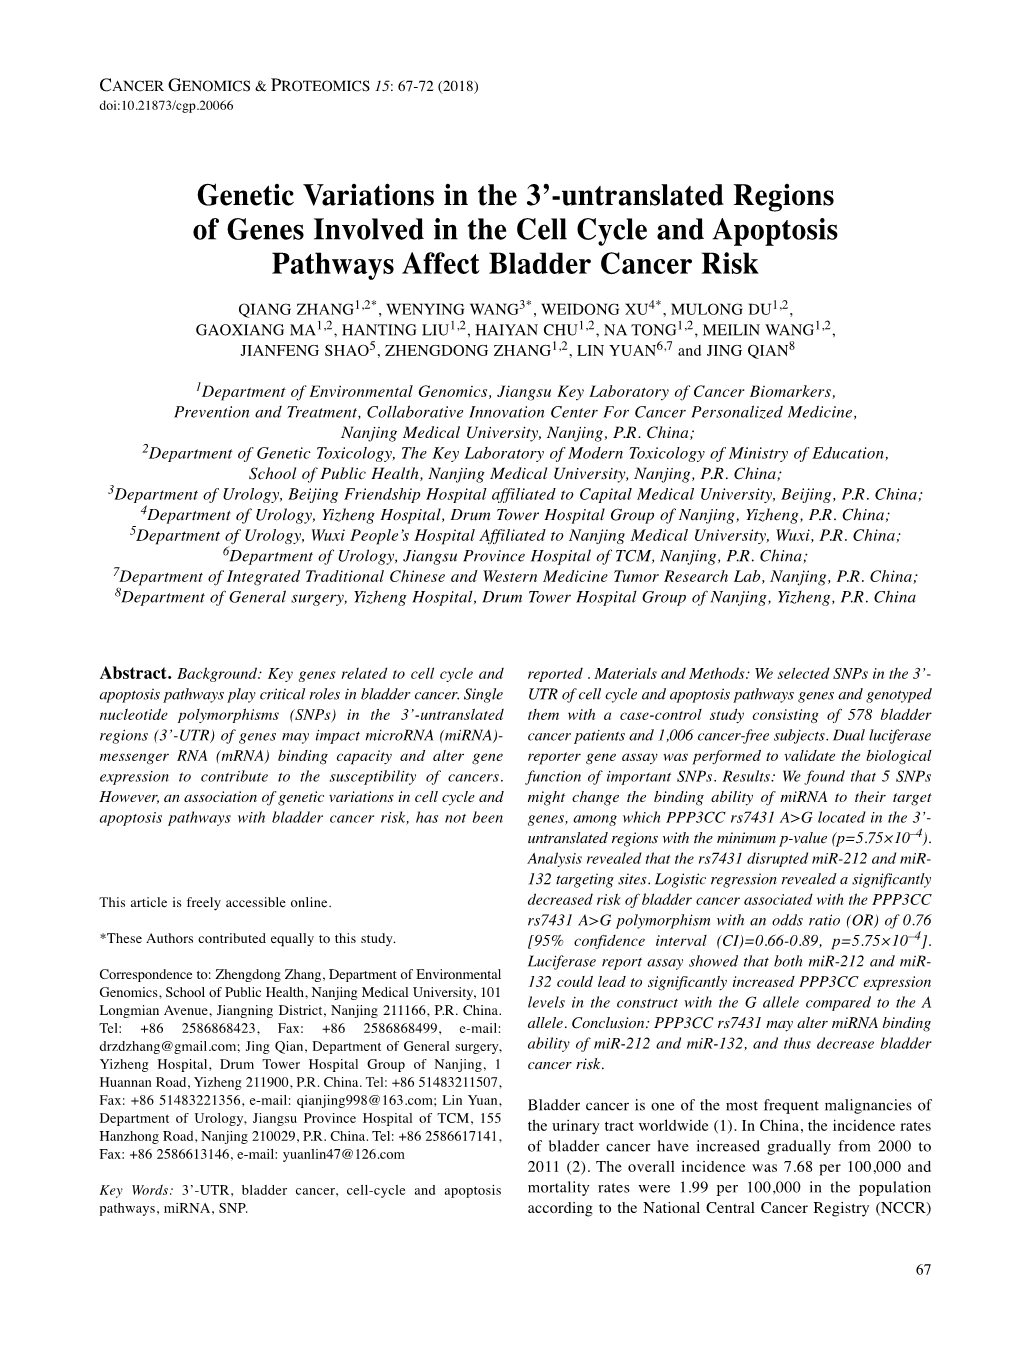 Genetic Variations in the 3'-Untranslated Regions of Genes